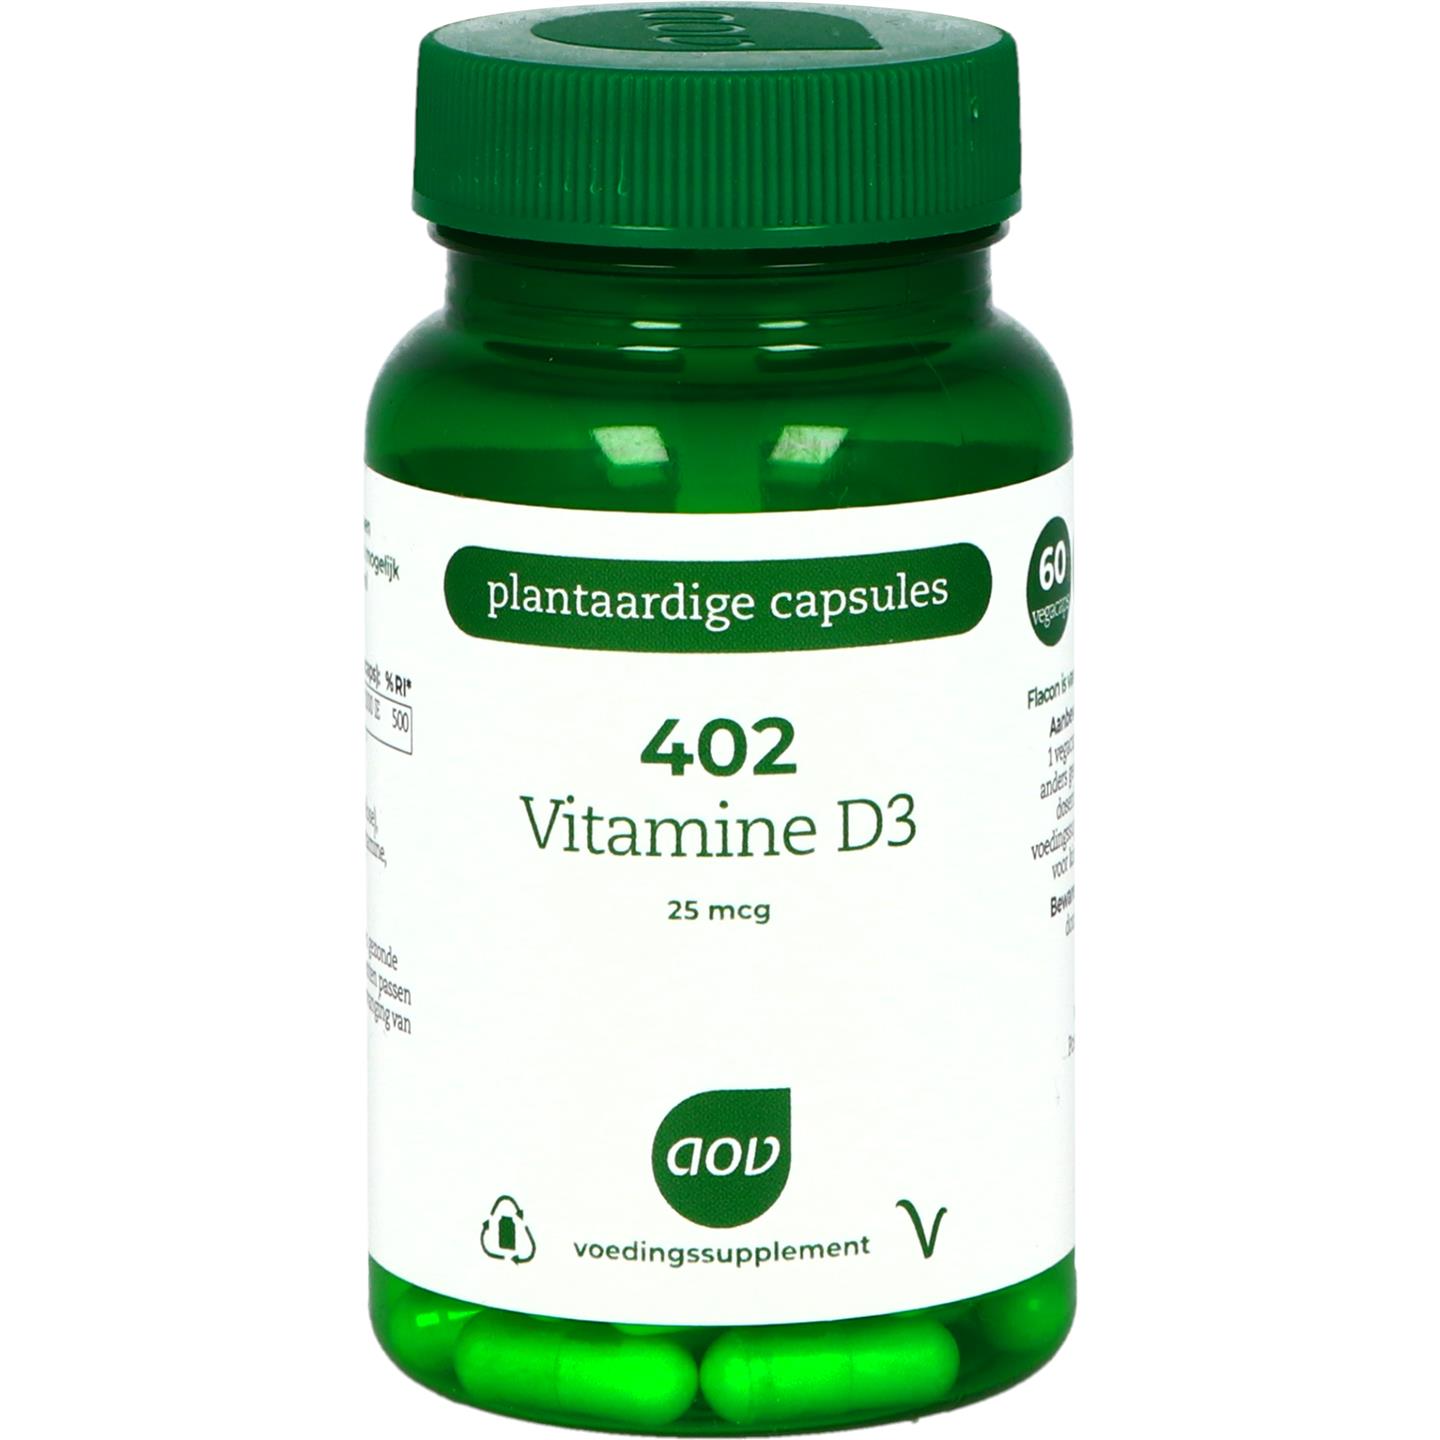 402 Vitamine D3 25 mcg